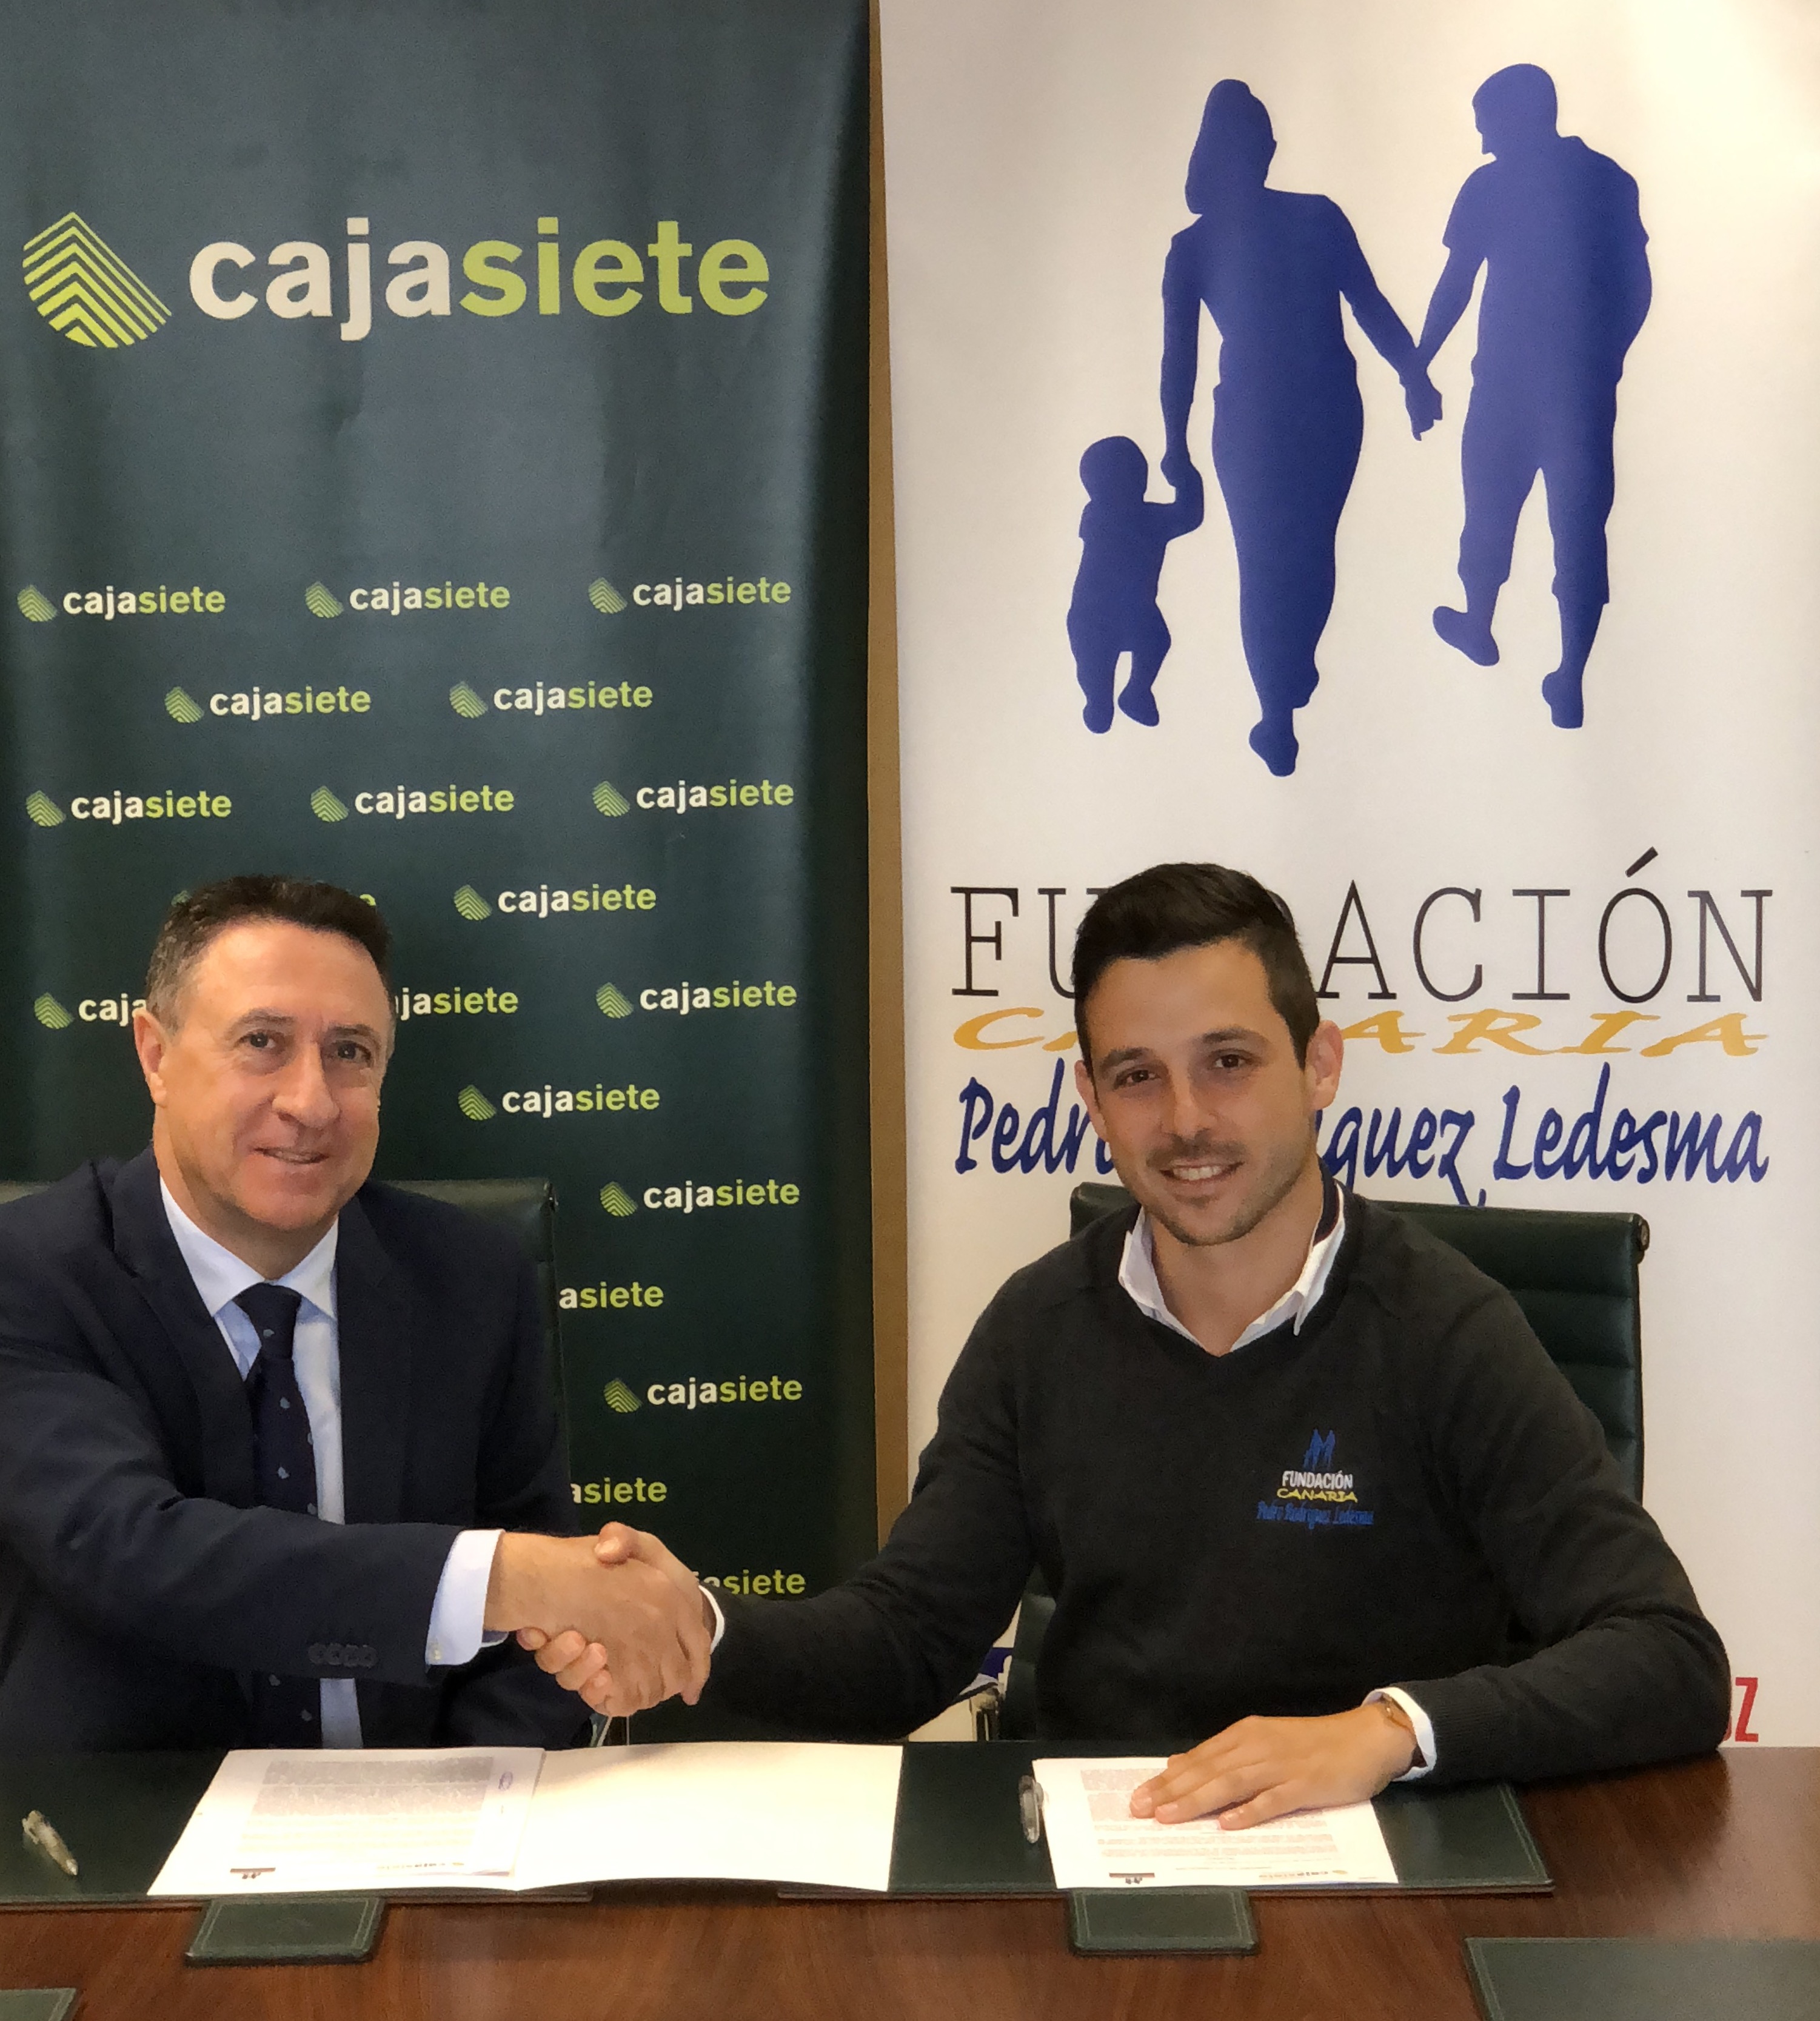 Renovado el acuerdo entre las fundaciones Cajasiete-Pedro Modesto Campos y Pedro Rodríguez Ledesma